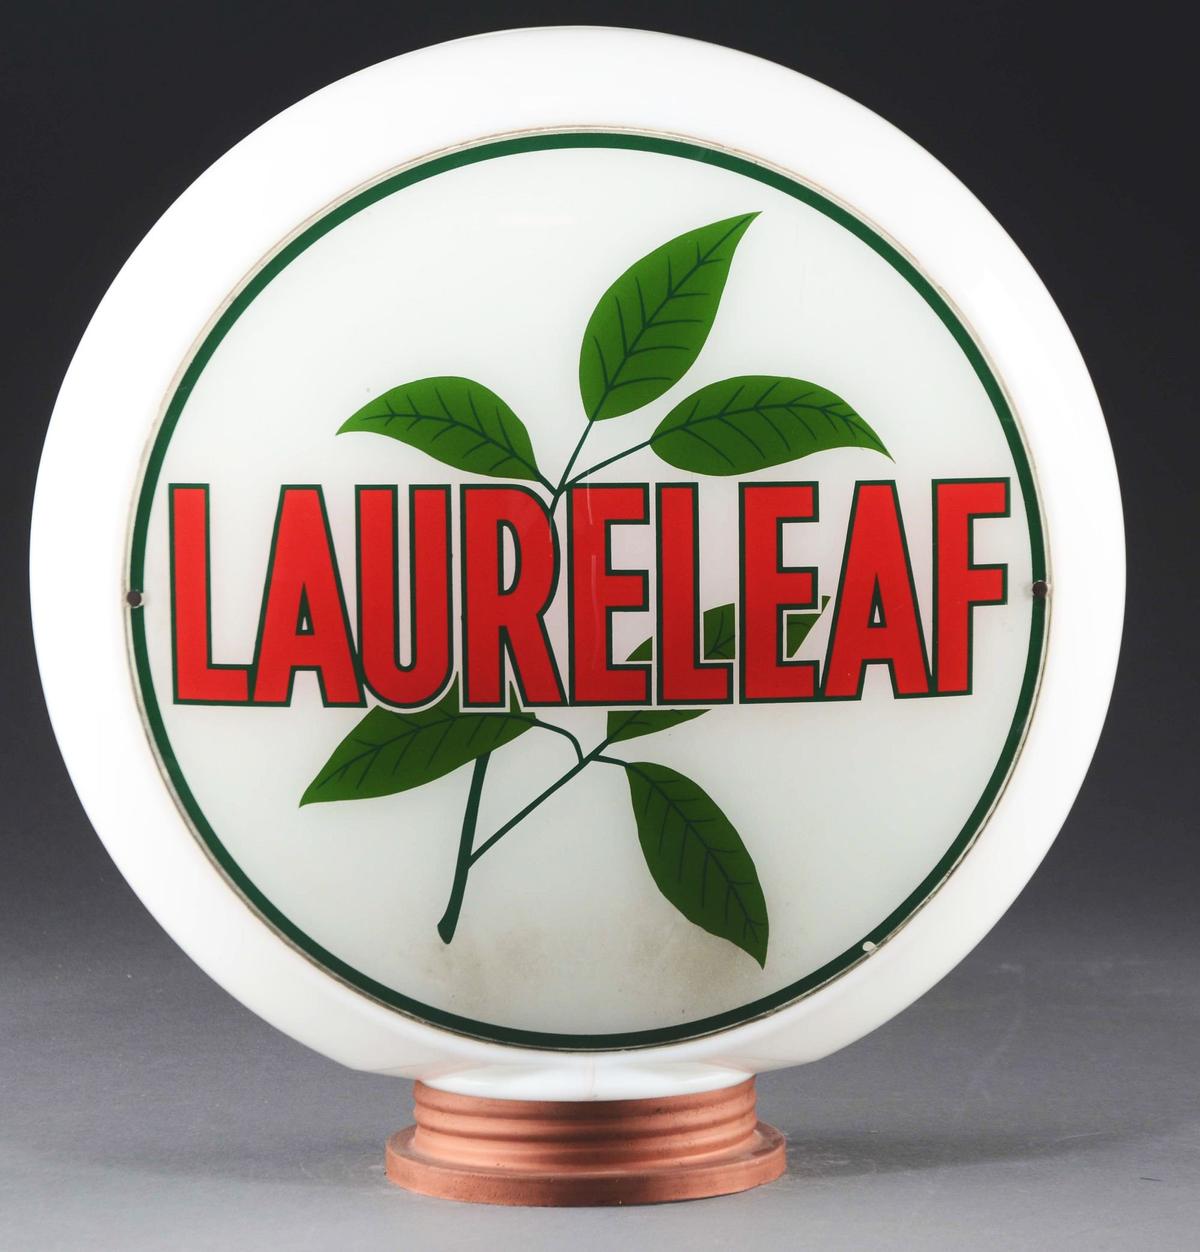 Laureleaf Gasoline Complete 13-1/2" Globe.